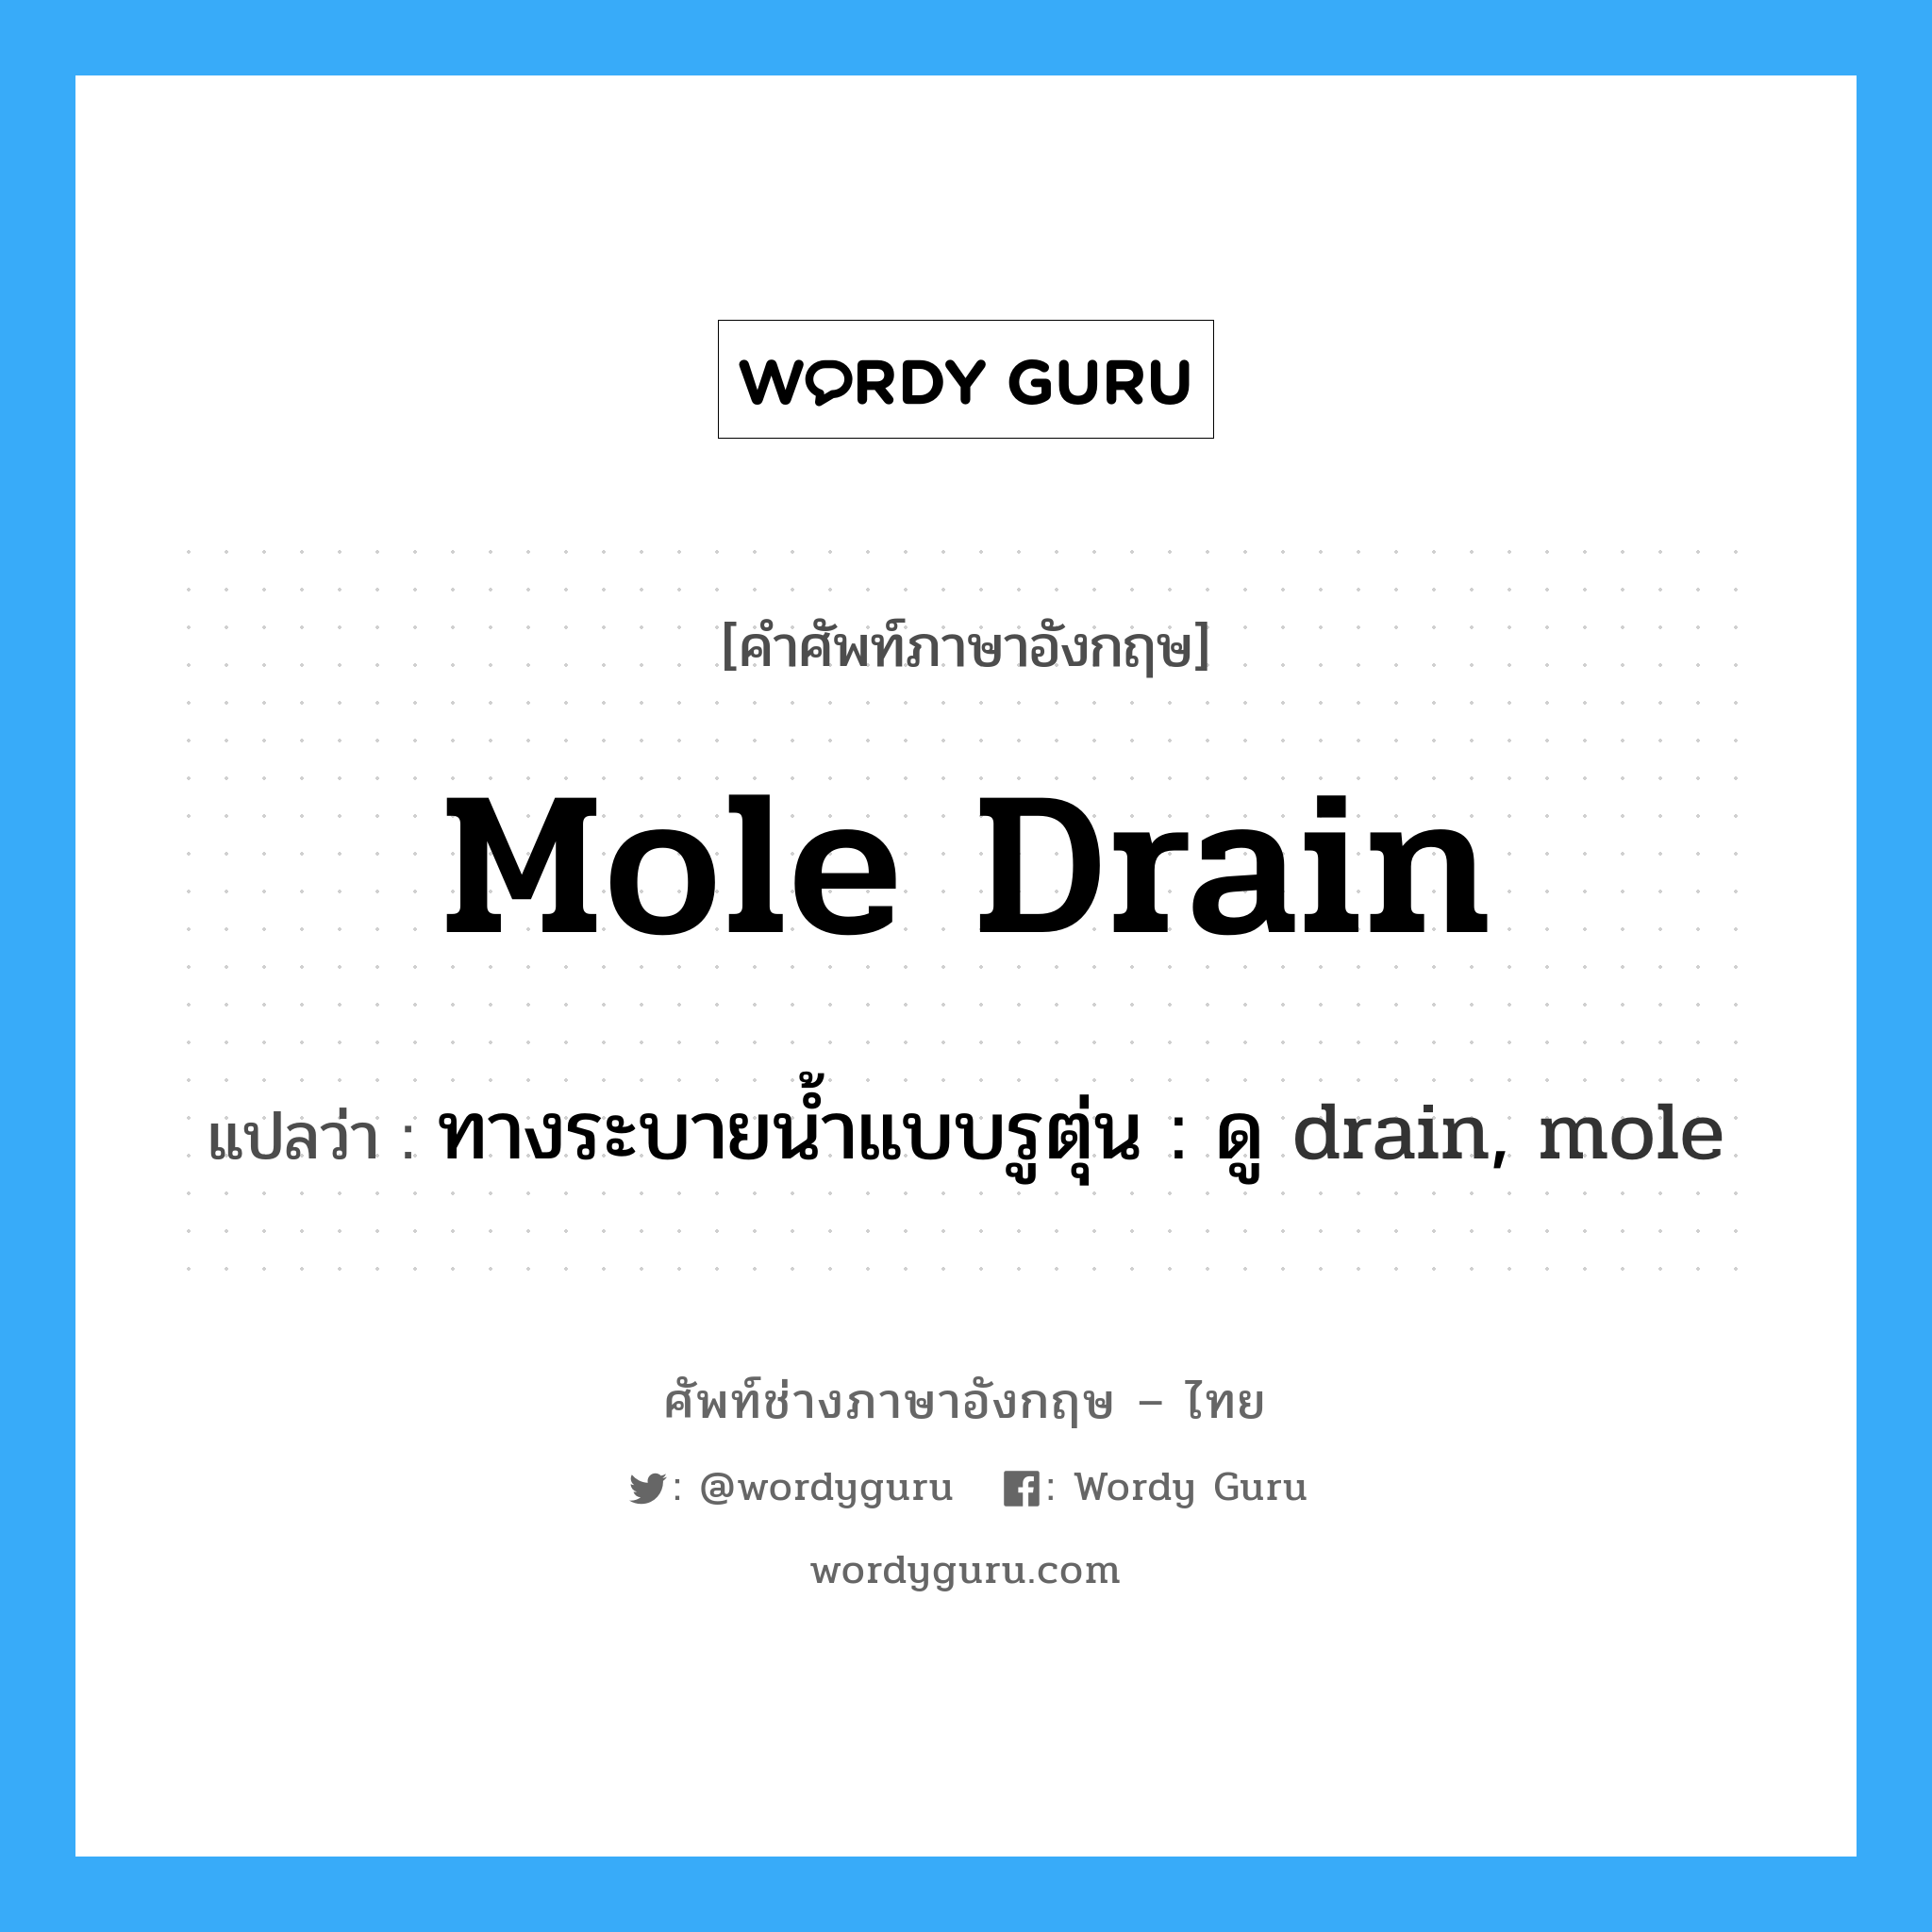 ทางระบายน้ำแบบรูตุ่น : ดู drain, mole ภาษาอังกฤษ?, คำศัพท์ช่างภาษาอังกฤษ - ไทย ทางระบายน้ำแบบรูตุ่น : ดู drain, mole คำศัพท์ภาษาอังกฤษ ทางระบายน้ำแบบรูตุ่น : ดู drain, mole แปลว่า mole drain